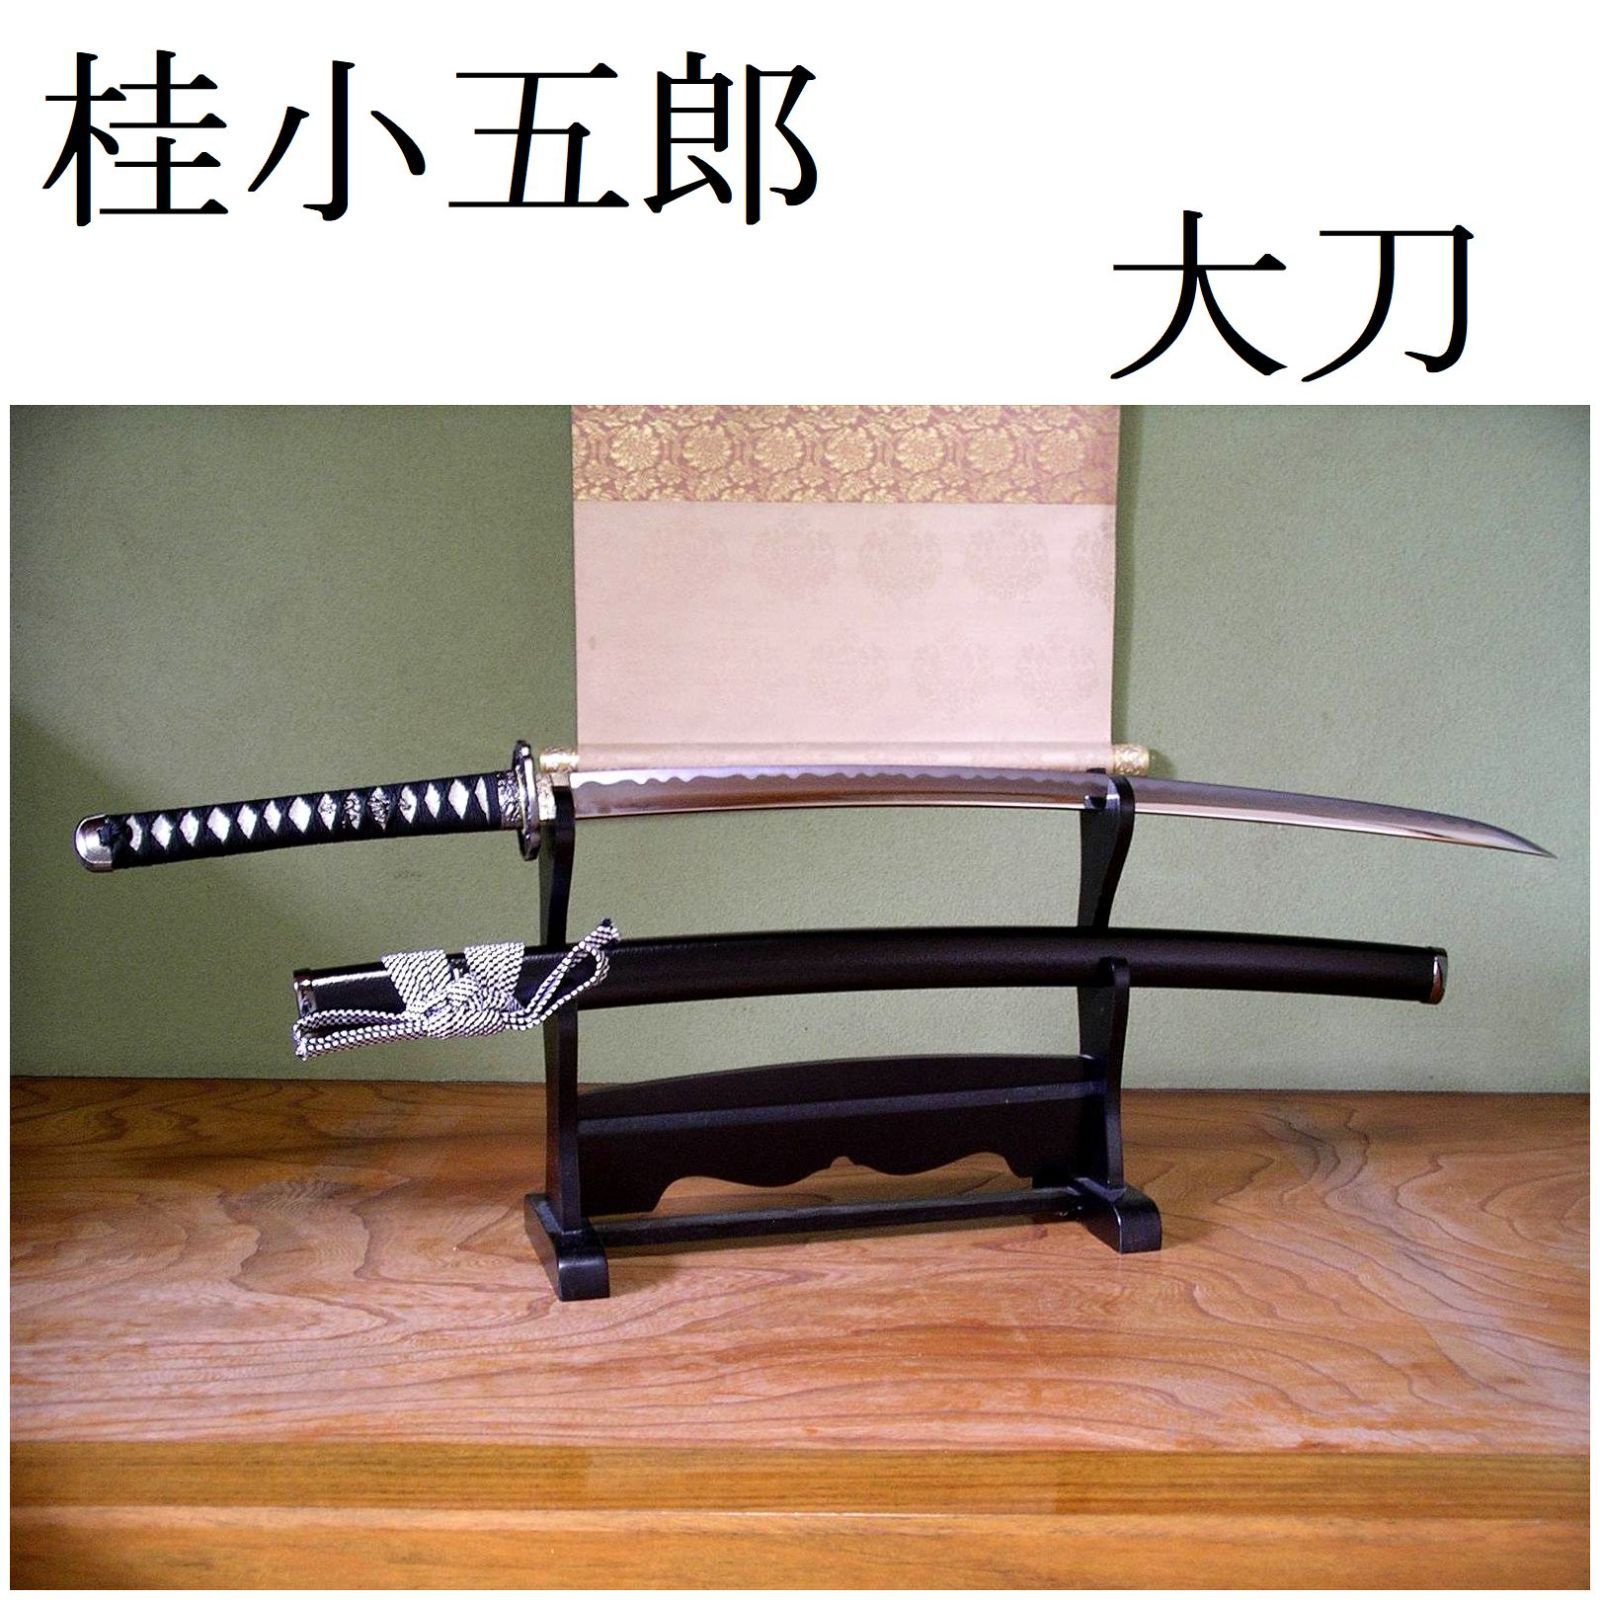 関の美術刀剣 維新の志士 桂小五郎 長船清光 大刀 模造刀 模擬刀 日本